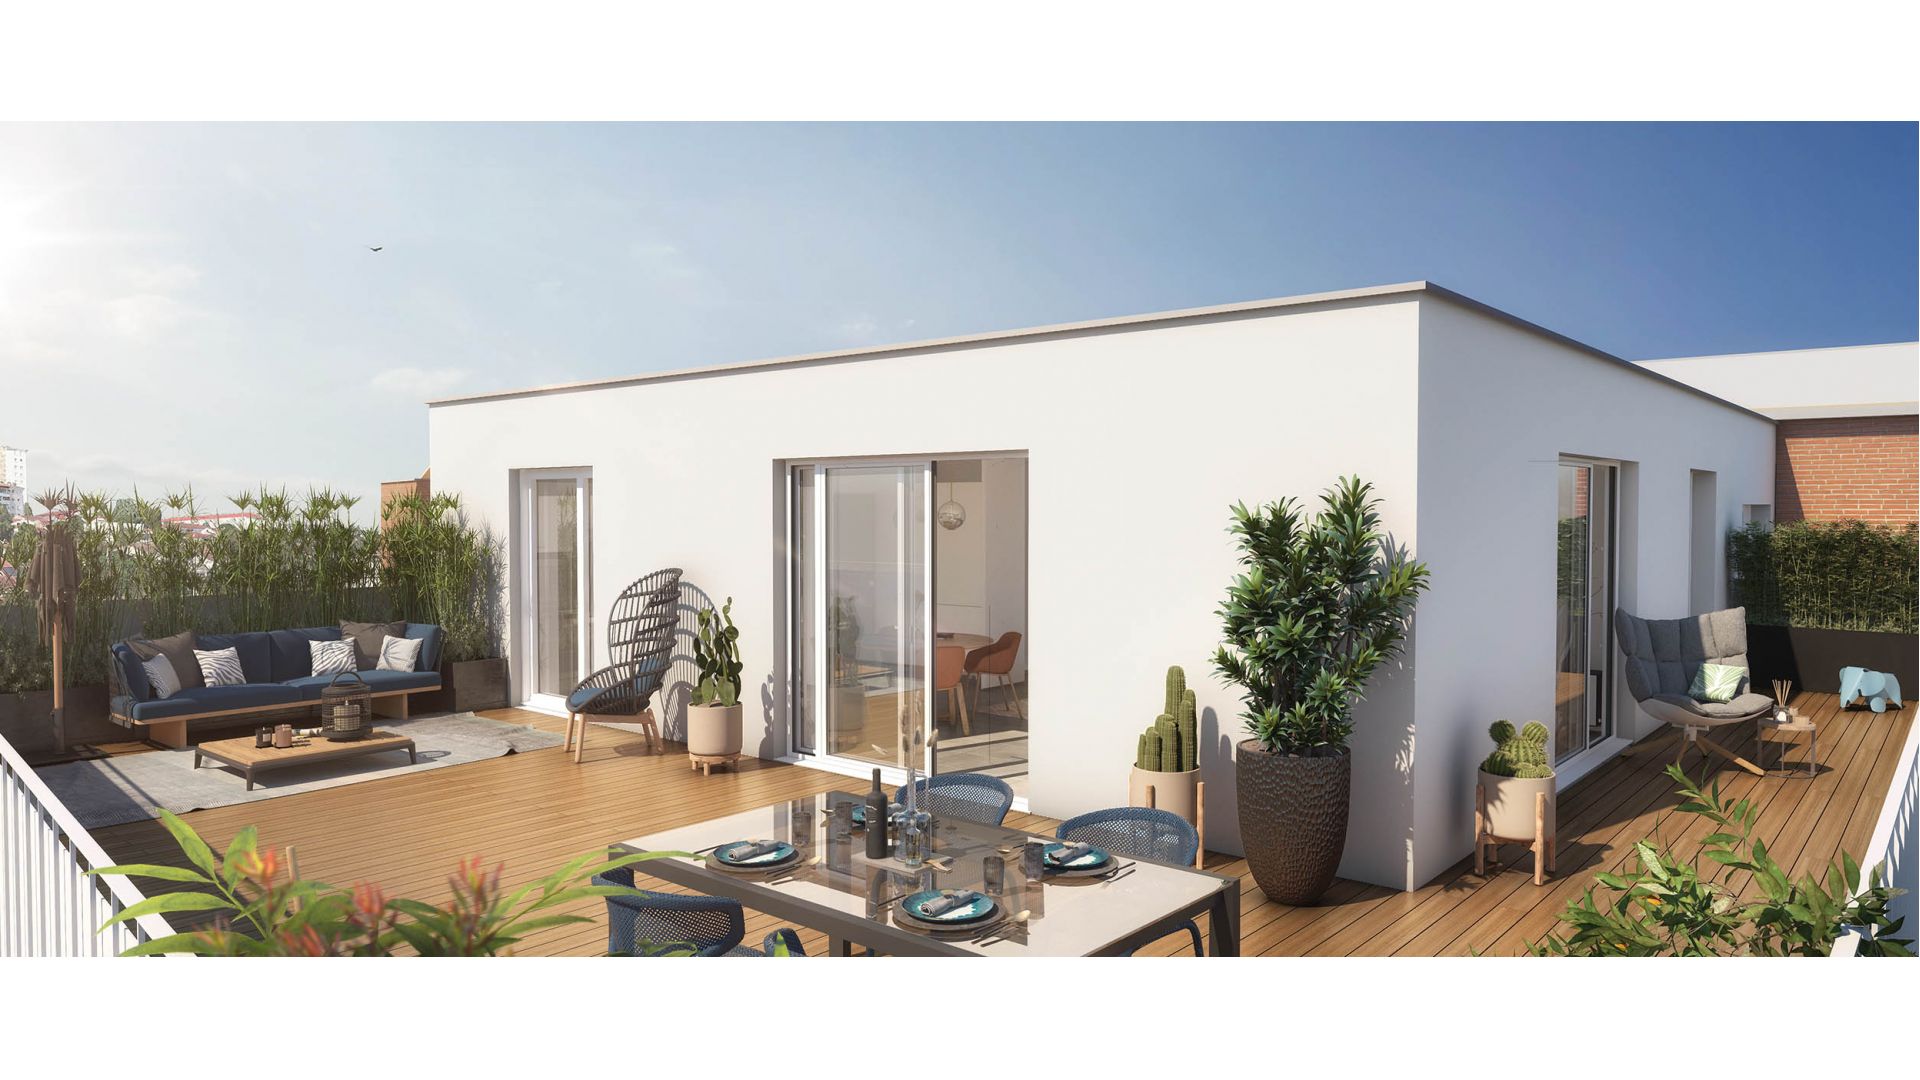 Greencity immobilier - achat appartements neufs du T2 au T4 - Résidence L'Impulsion - Toulouse 31500  - vue terrasse